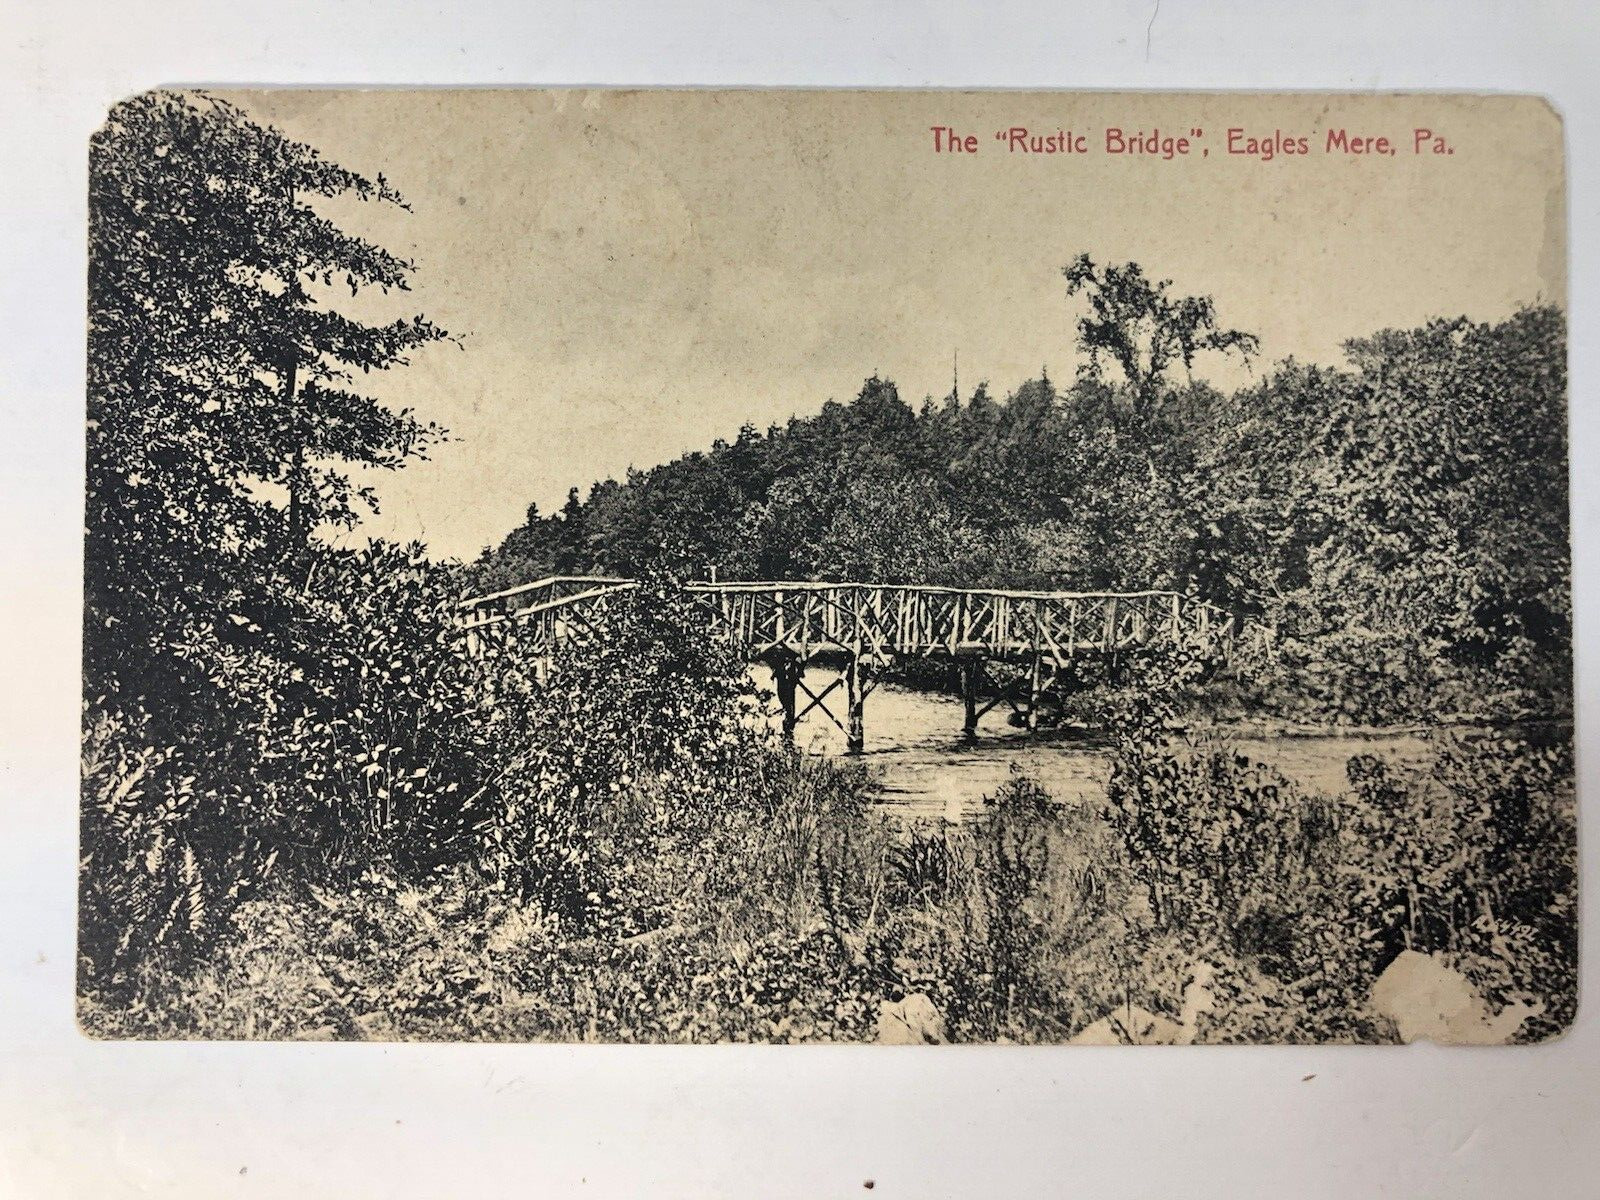 VTG Eagles Mere Pennsylvania The Rustic Bridge